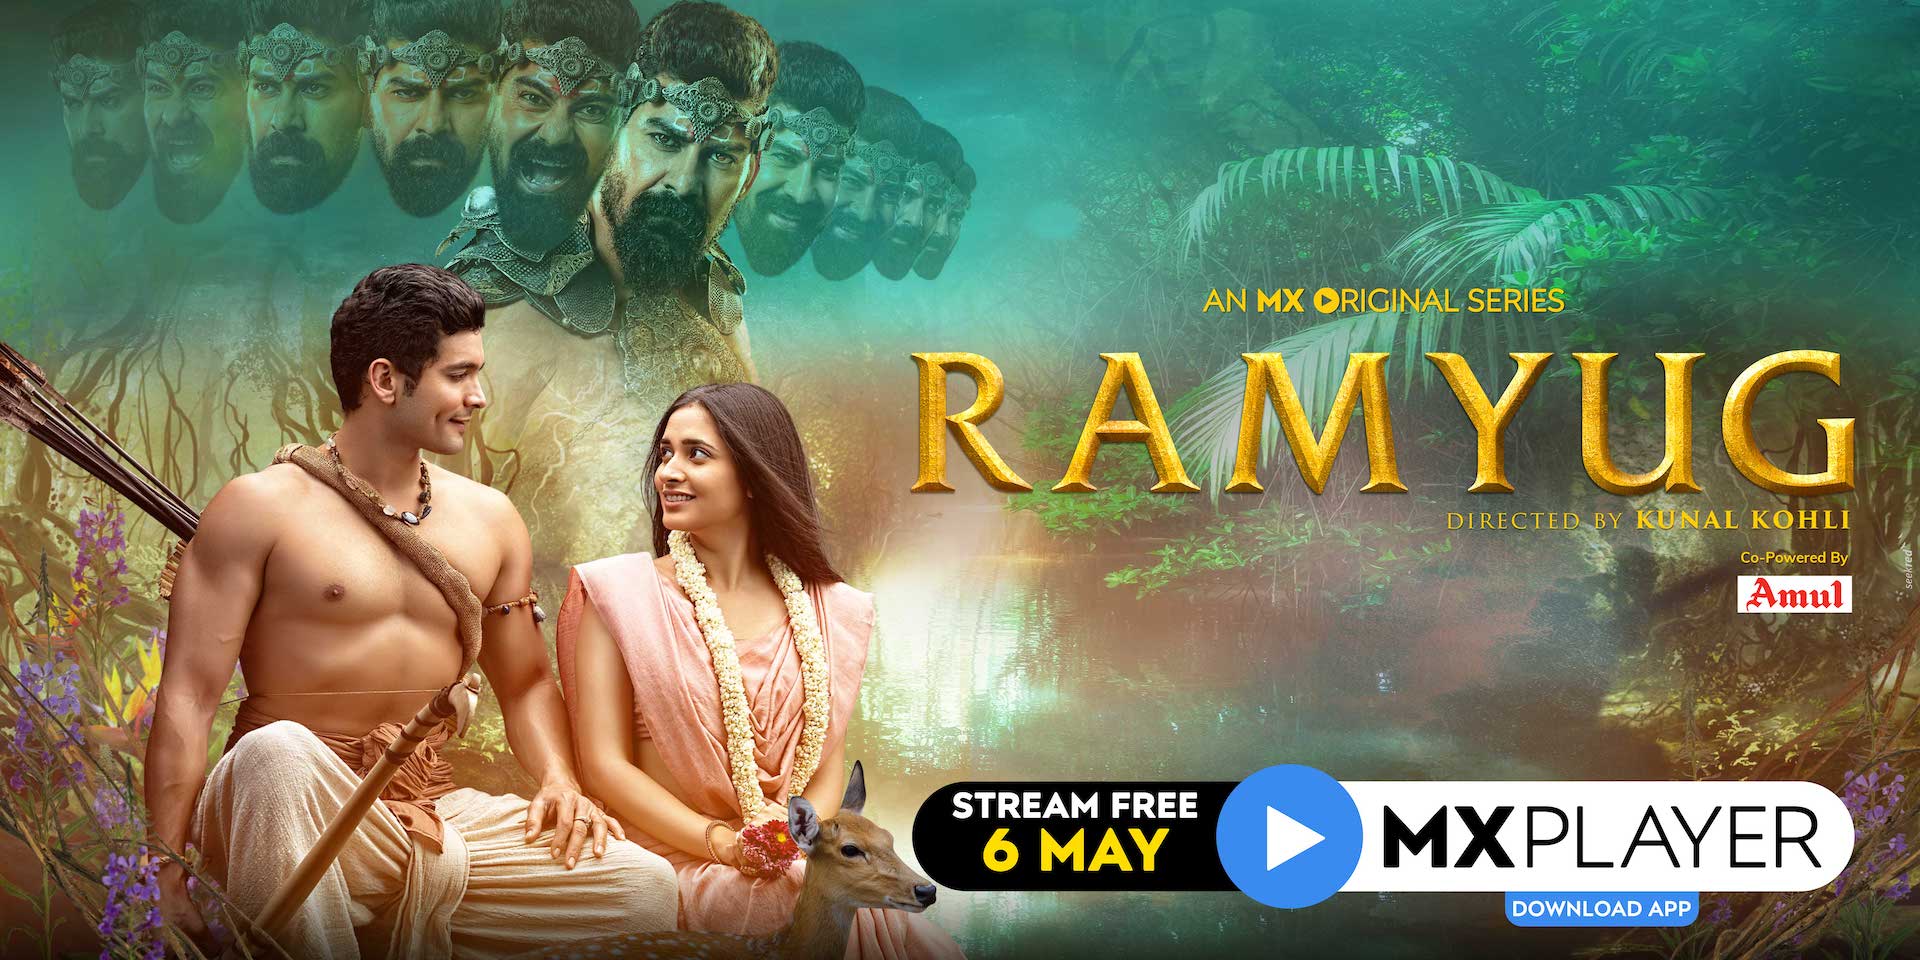 एमएक्स प्लेयर ने जारी किया 'रामयुग' वेब सीरीज़ का ट्रेलर, ओटीटी की दुनिया में अब रामायण की कहानी